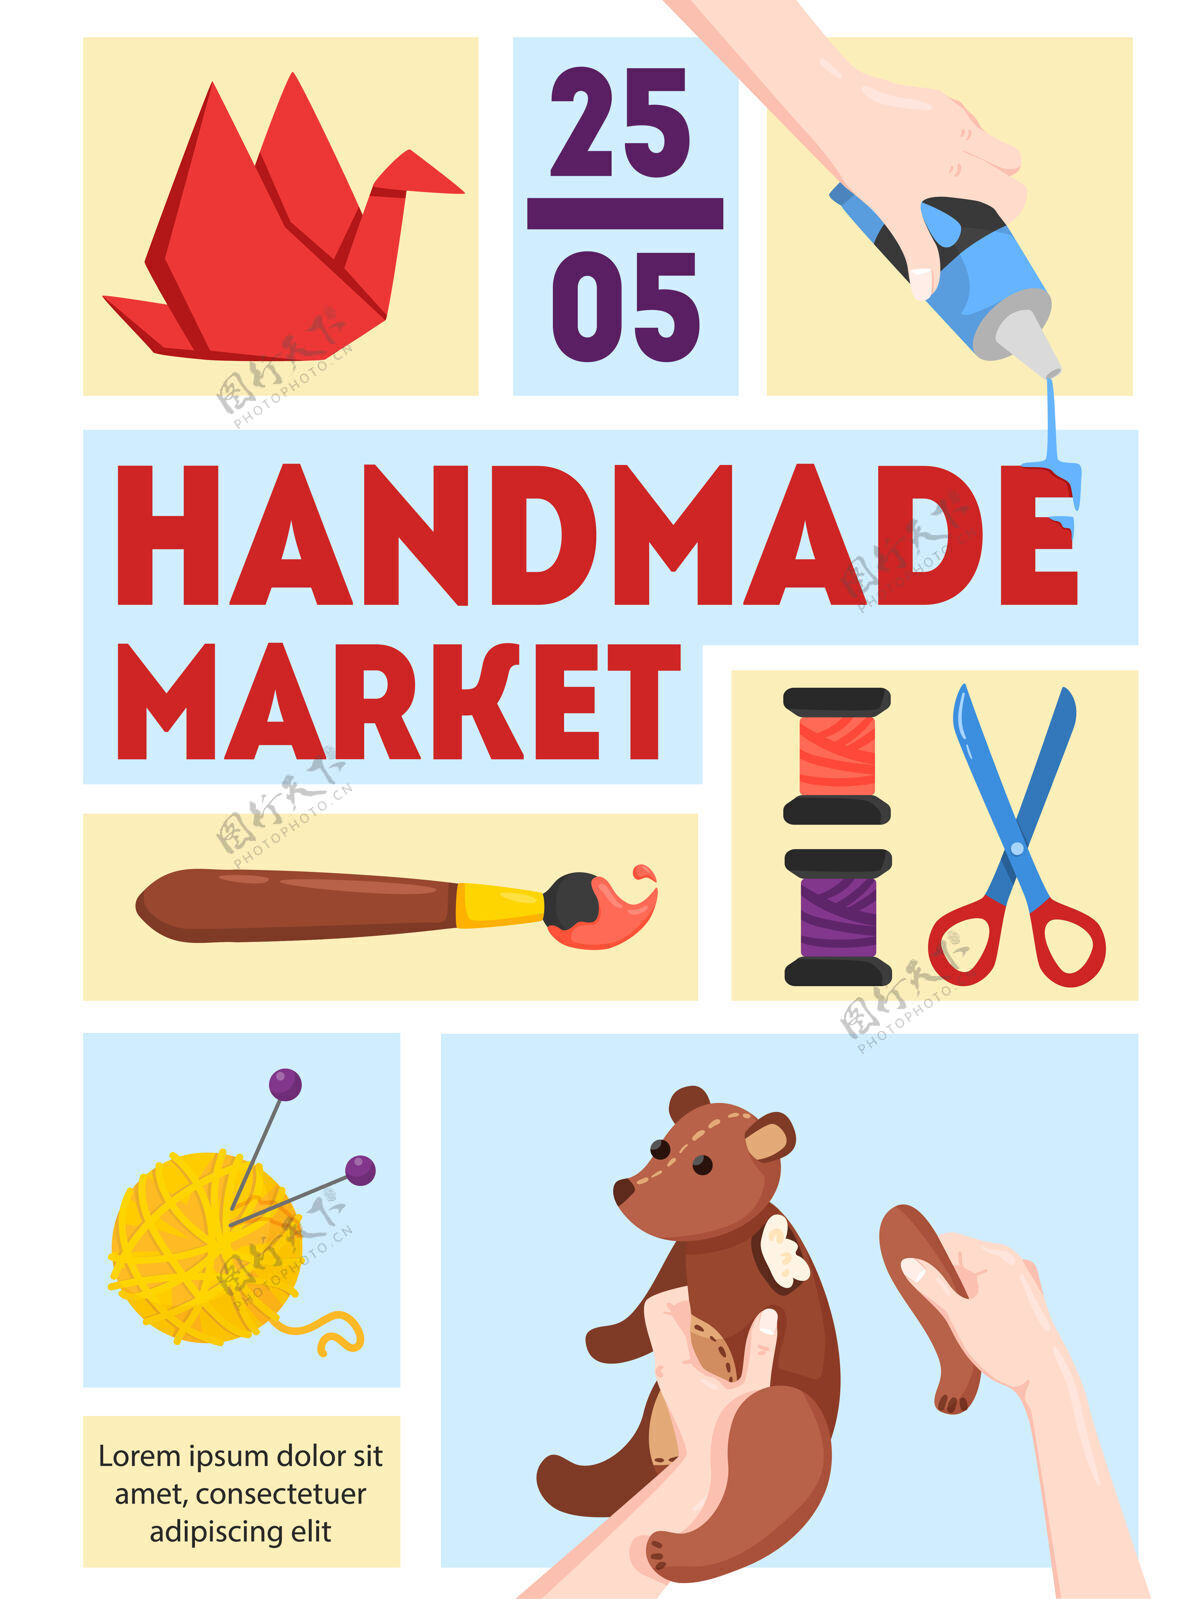 日期手工制作的市场海报模板与日期时间纸拼接组装玩具画编织产品海报手工制作